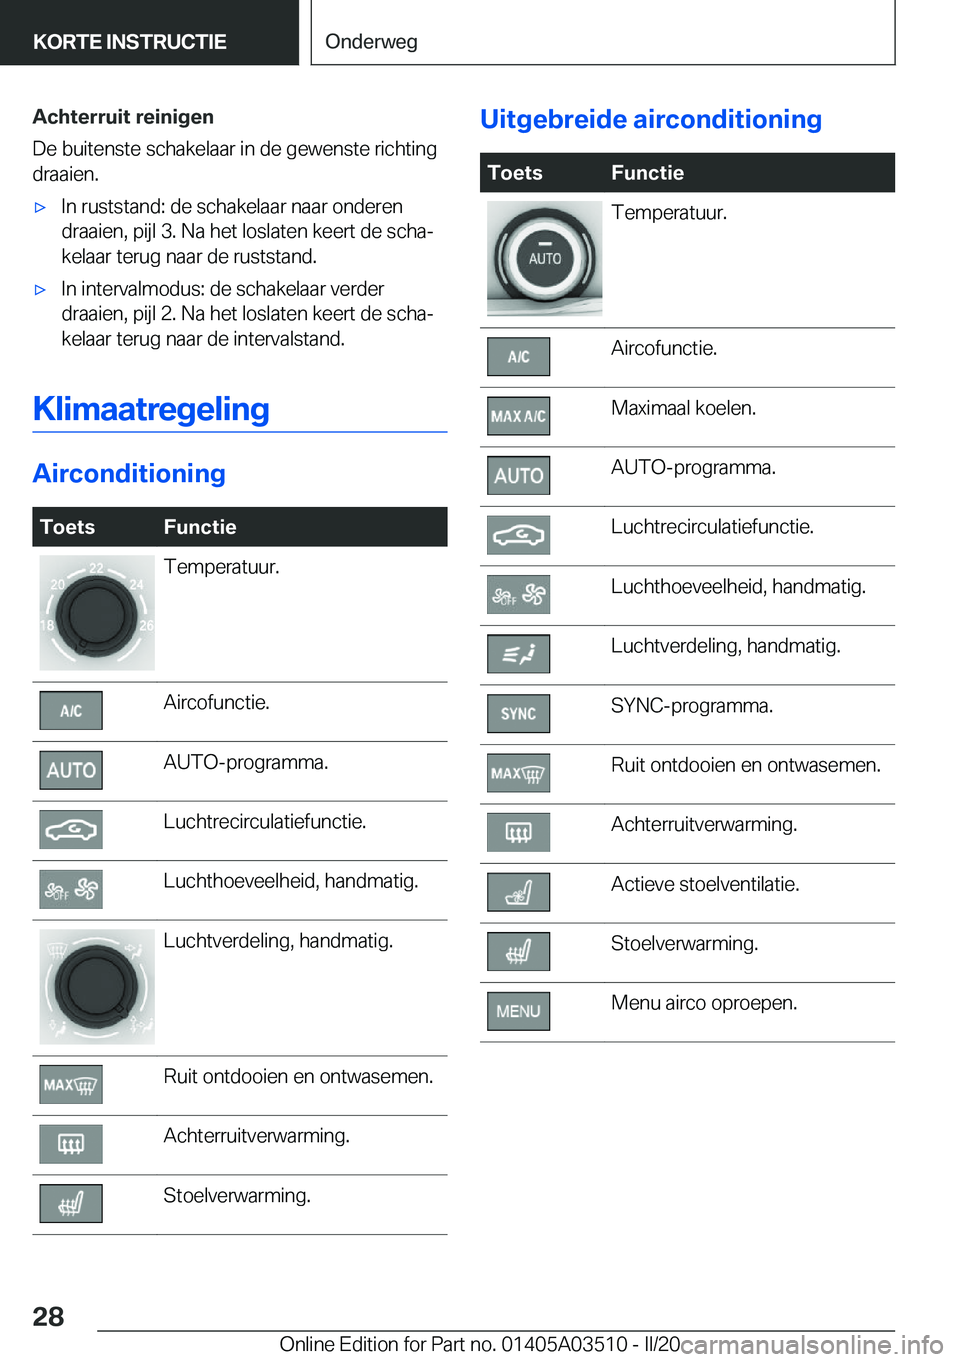 BMW X3 2020  Instructieboekjes (in Dutch) �A�c�h�t�e�r�r�u�i�t��r�e�i�n�i�g�e�n
�D�e��b�u�i�t�e�n�s�t�e��s�c�h�a�k�e�l�a�a�r��i�n��d�e��g�e�w�e�n�s�t�e��r�i�c�h�t�i�n�g
�d�r�a�a�i�e�n�.'x�I�n��r�u�s�t�s�t�a�n�d�:��d�e��s�c�h�a�k